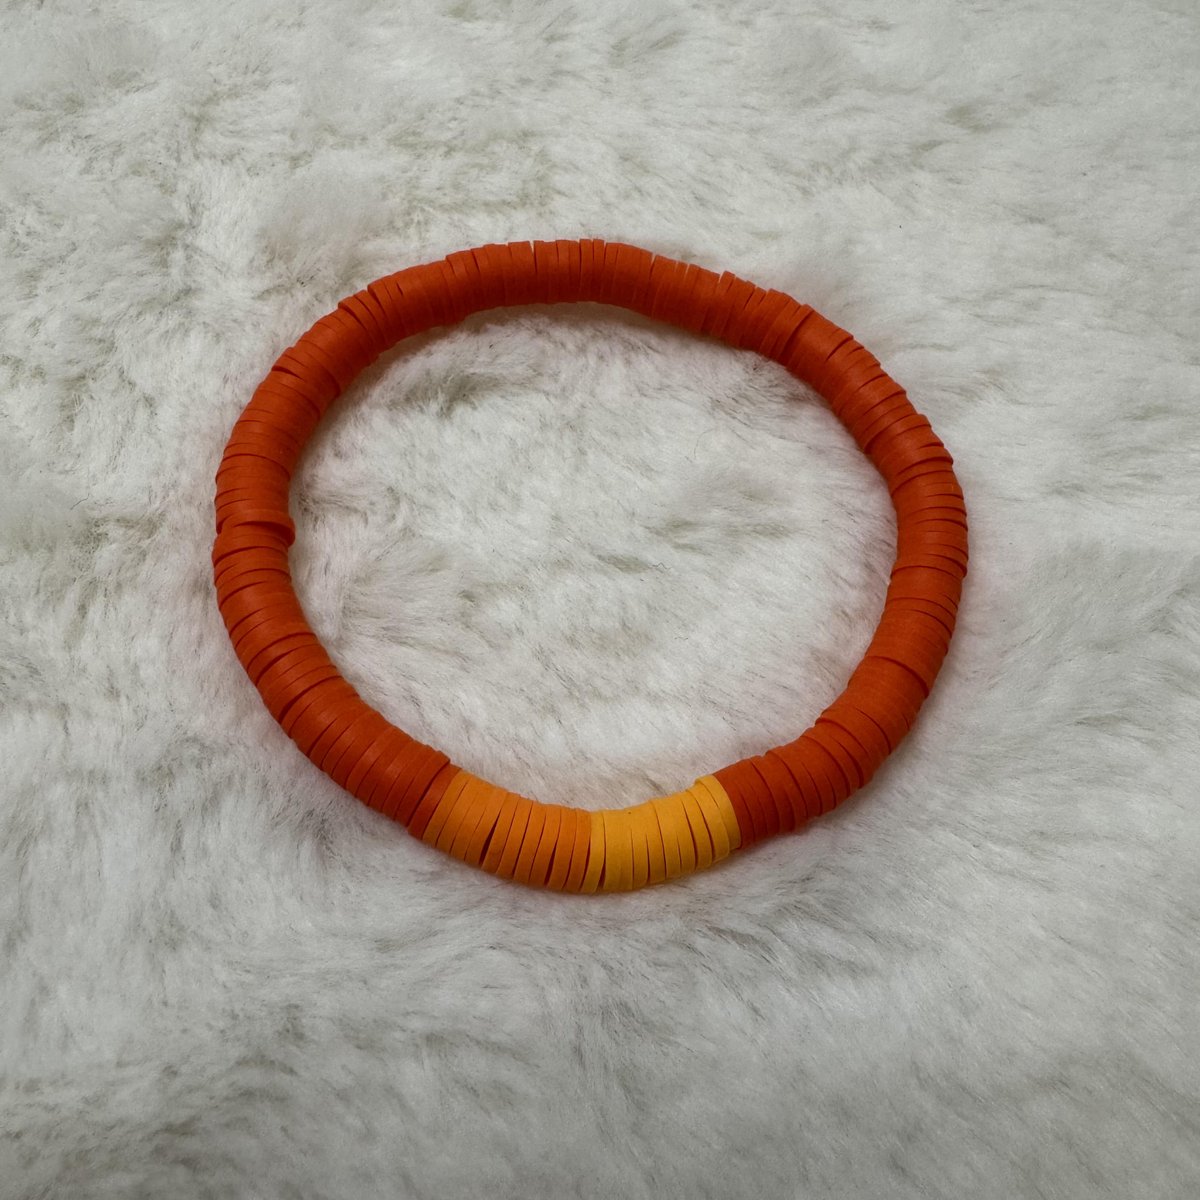 Orange Heishi Clay Bead Bracelet #3

aldesignsbyashley.etsy.com

#etsyshop #etsyseller #etsyhandmade #etsy #handmade #handmadejewelry #handmadeearrings #earrings #handmadeearringsforsale #earringstyle #etsygifts #etsysellersofinstagram #jewelry #jewelrydesign